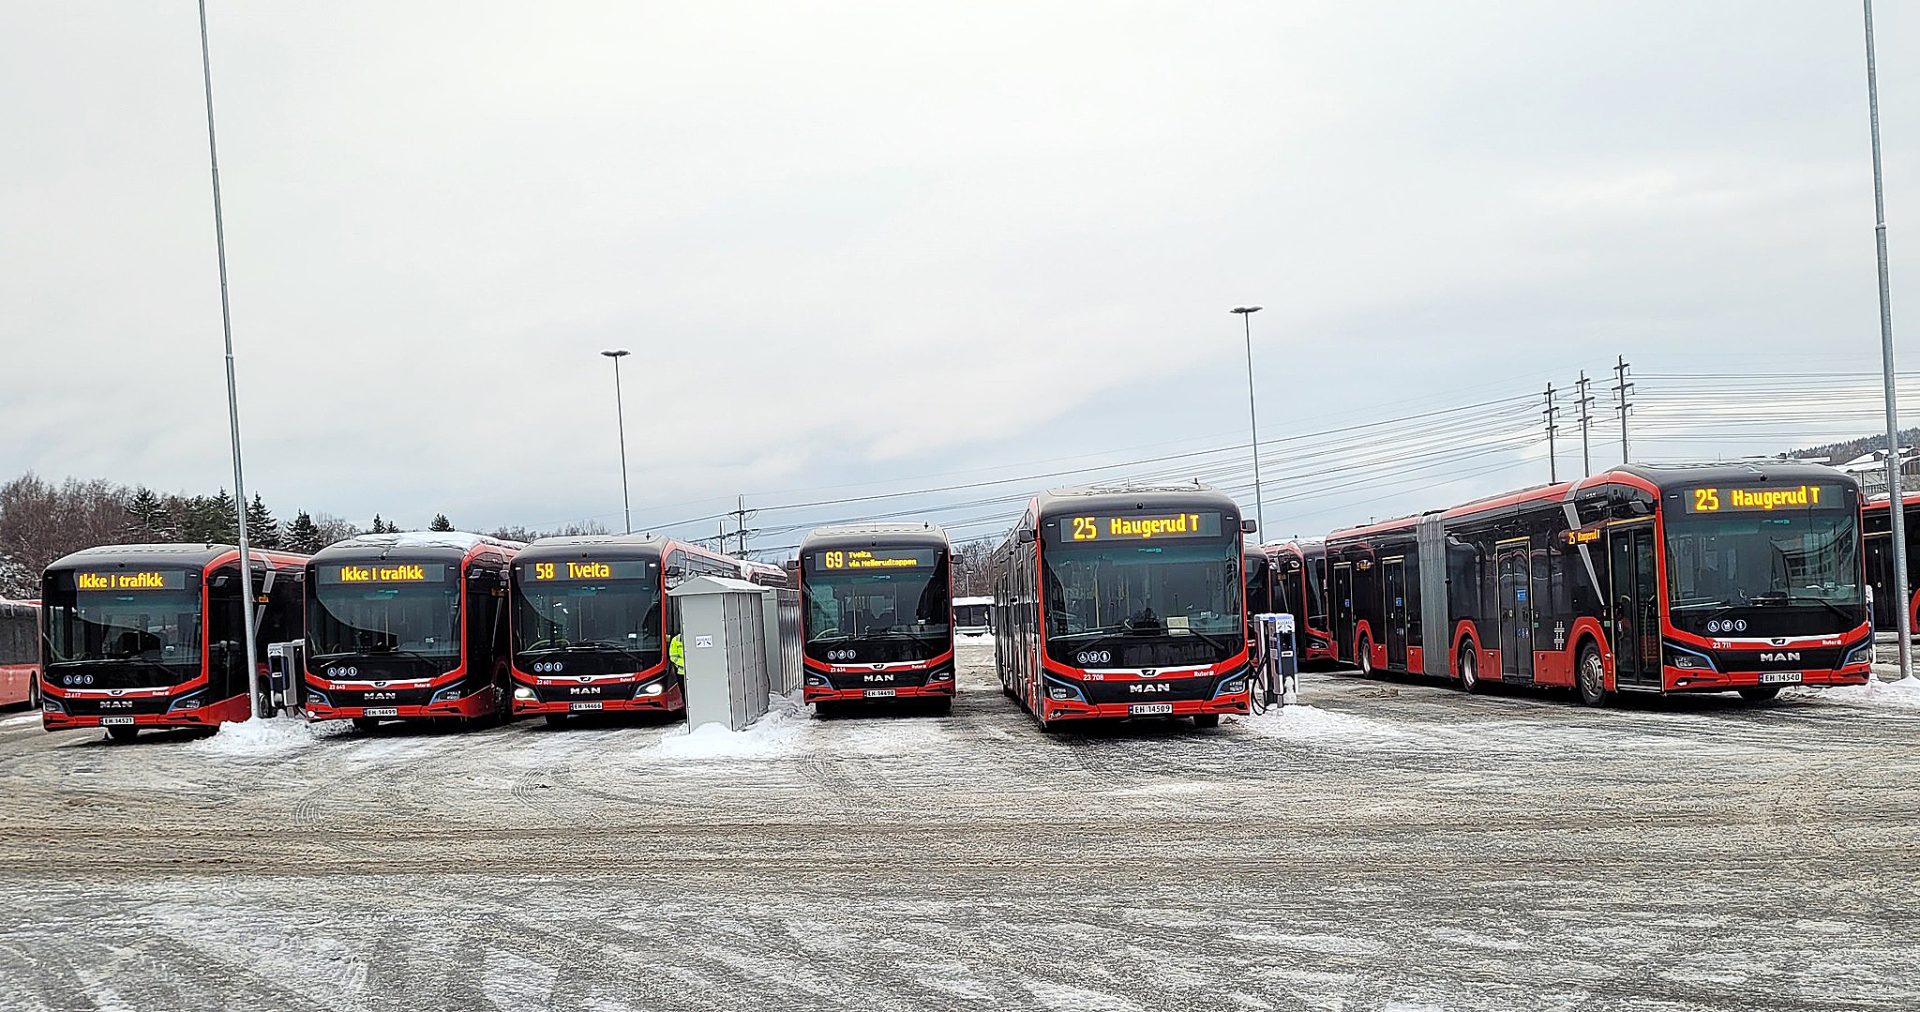 En rekke røde og hvite bybusser på en snødekt tomt, som viser forskjellige rutenumre og destinasjoner.